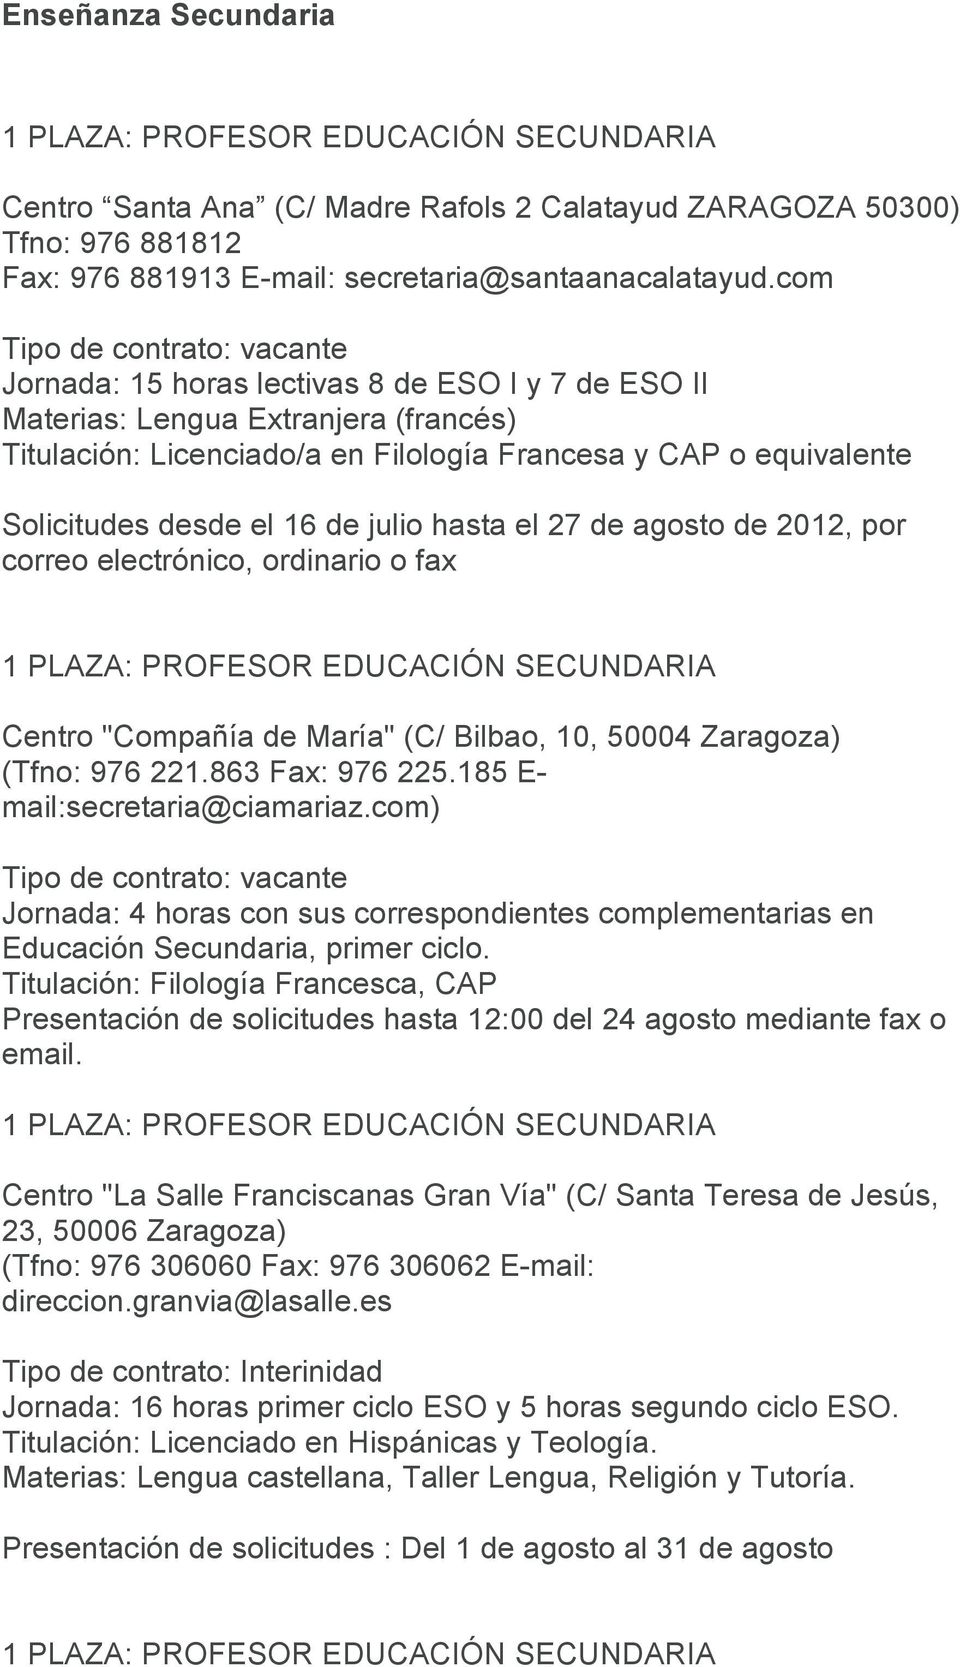 desde el 16 de julio hasta el 27 de agosto de 2012, por correo electrónico, ordinario o fax Centro "Compañía de María" (C/ Bilbao, 10, 50004 Zaragoza) (Tfno: 976 221.863 Fax: 976 225.